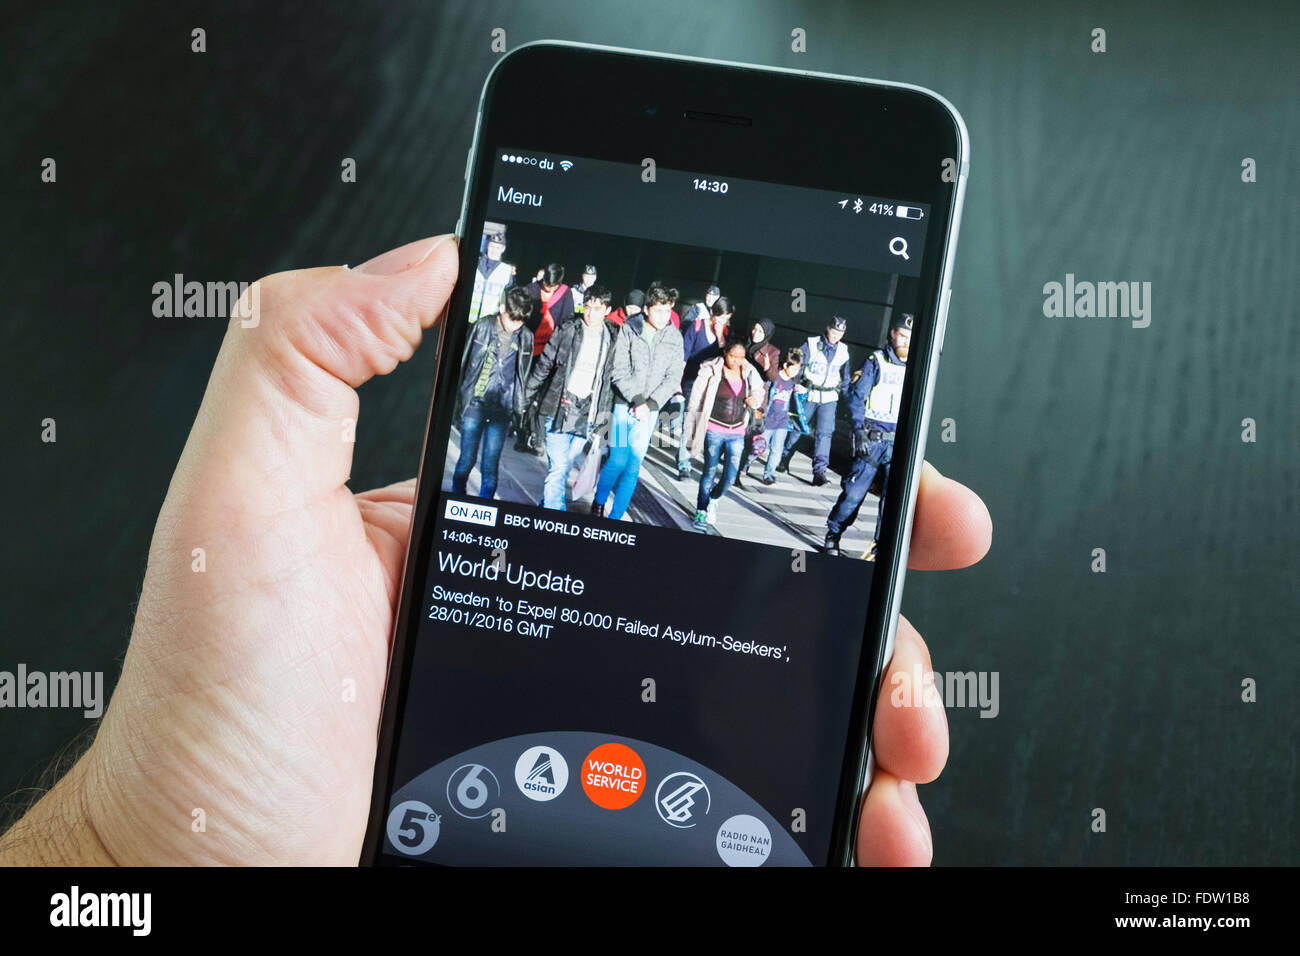 BBC IPlayer Radio-Streaming-app zeigt BBC World Service auf einem iPhone 6 Plus Smartphone Stockfoto